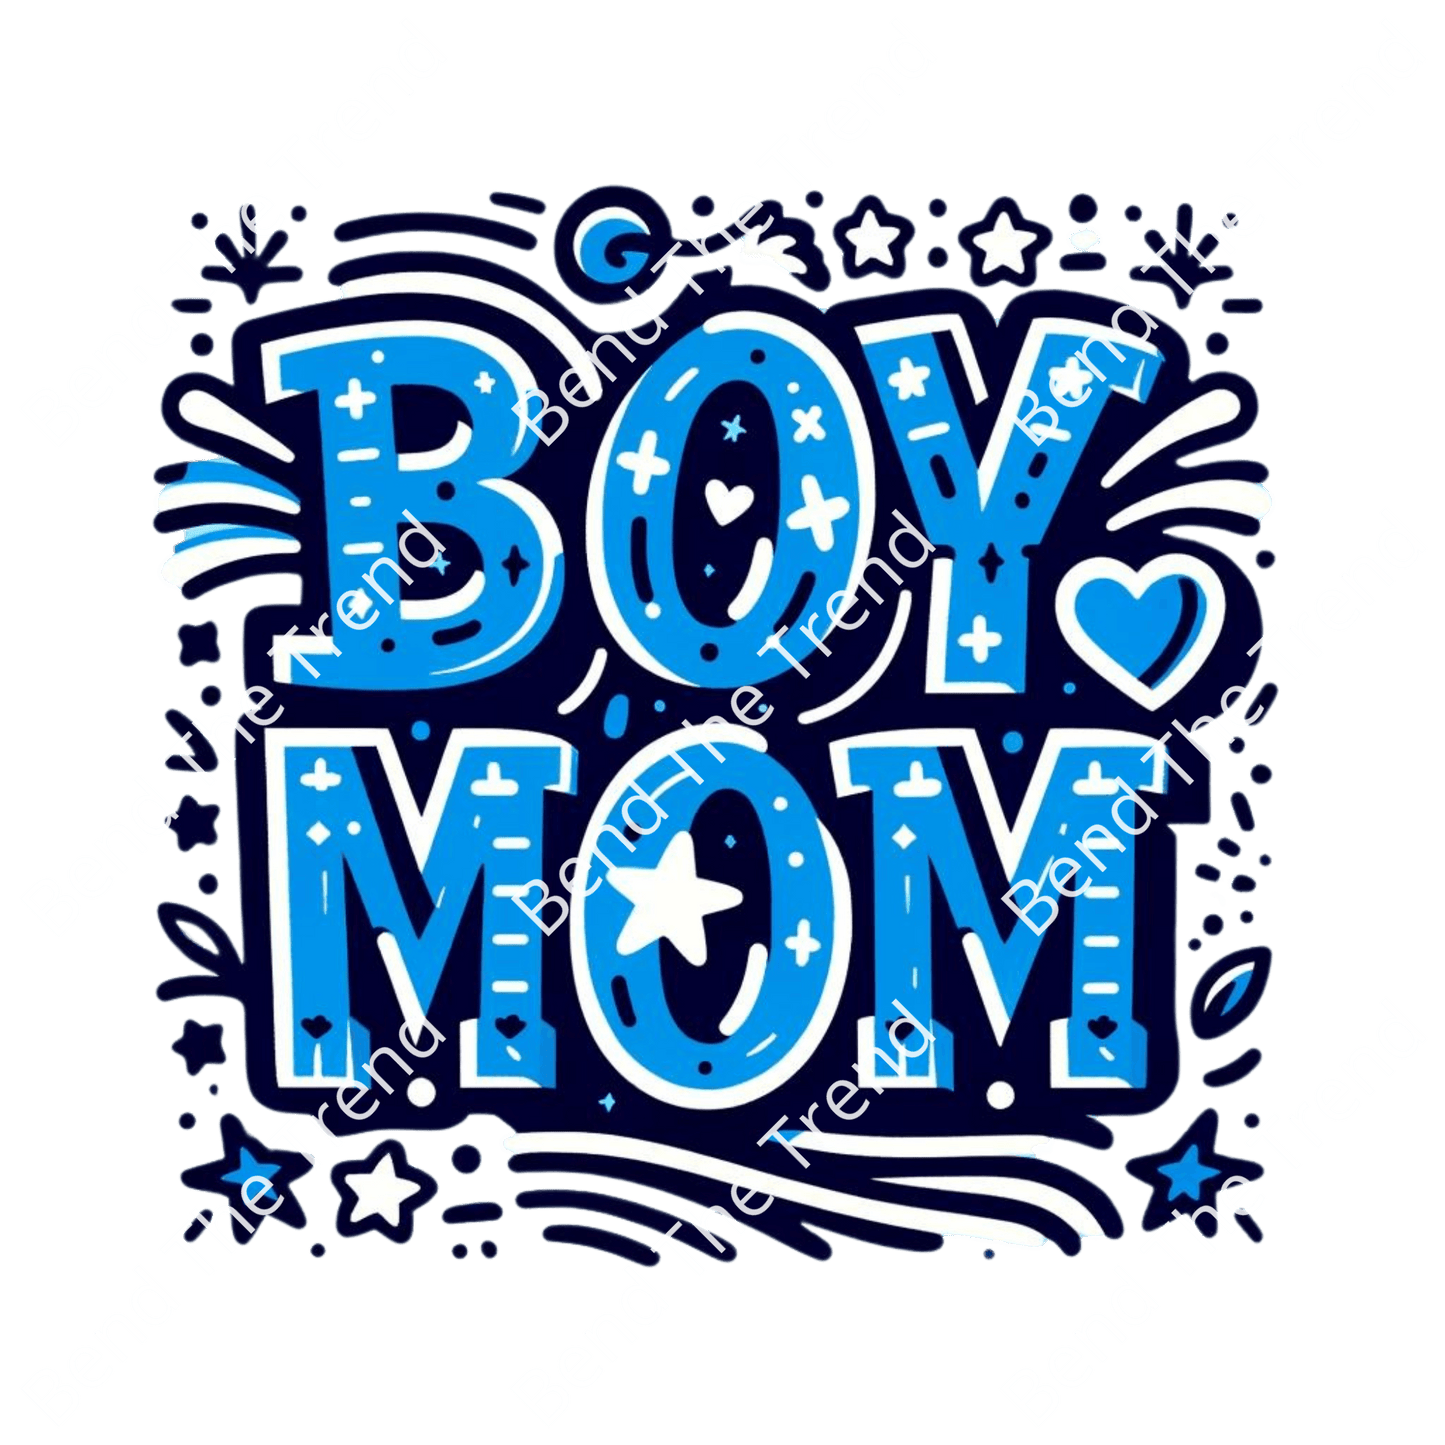 Boy Mom T-Shirt Graphics, Transparent Digital Download for DTF Design Gang Sheet